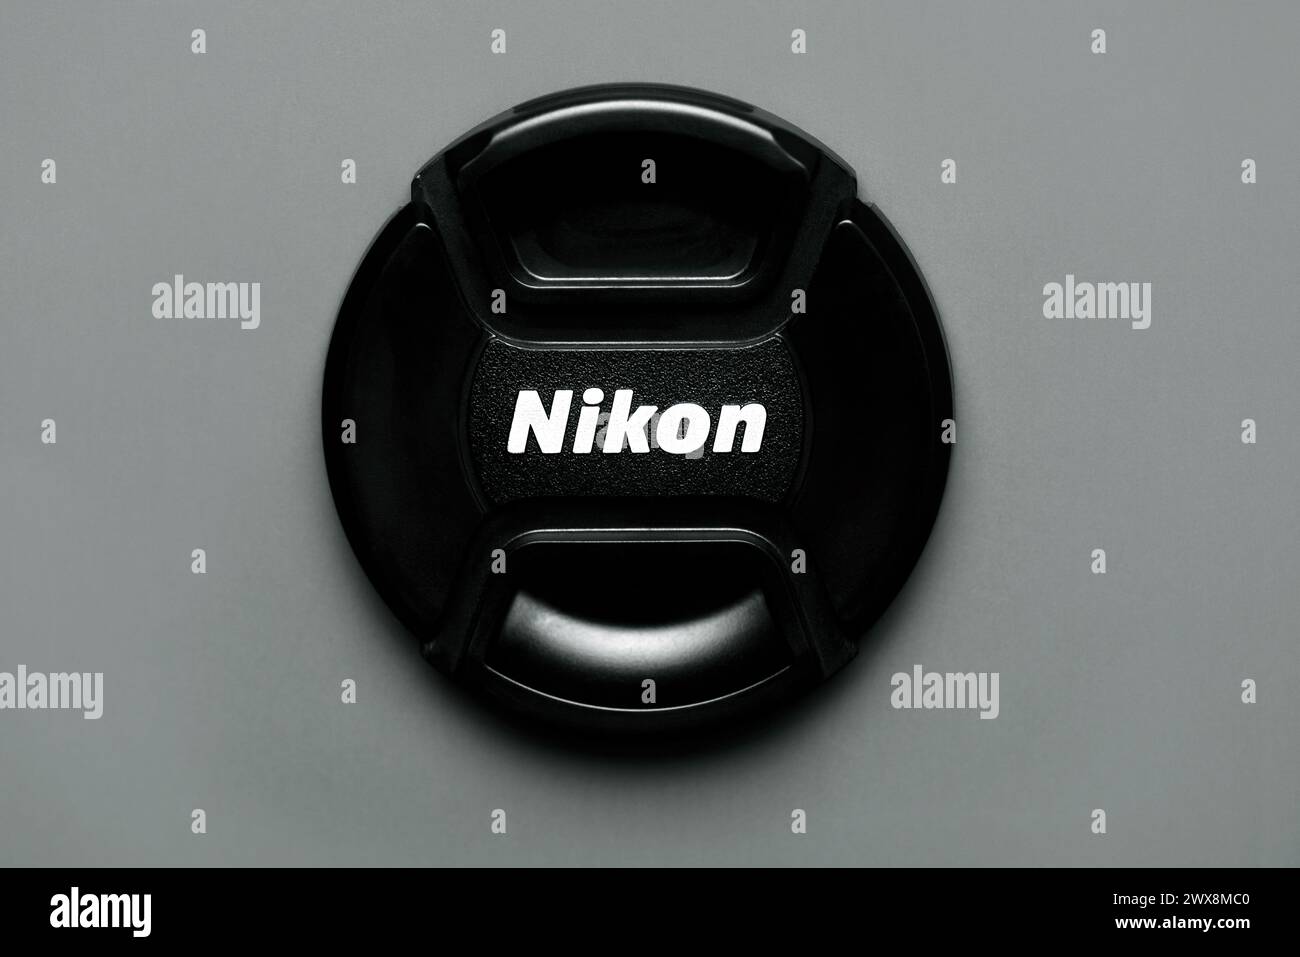 Primo piano del copriobiettivo Nikon su sfondo grigio. Editoriale illustrativo Foto Stock